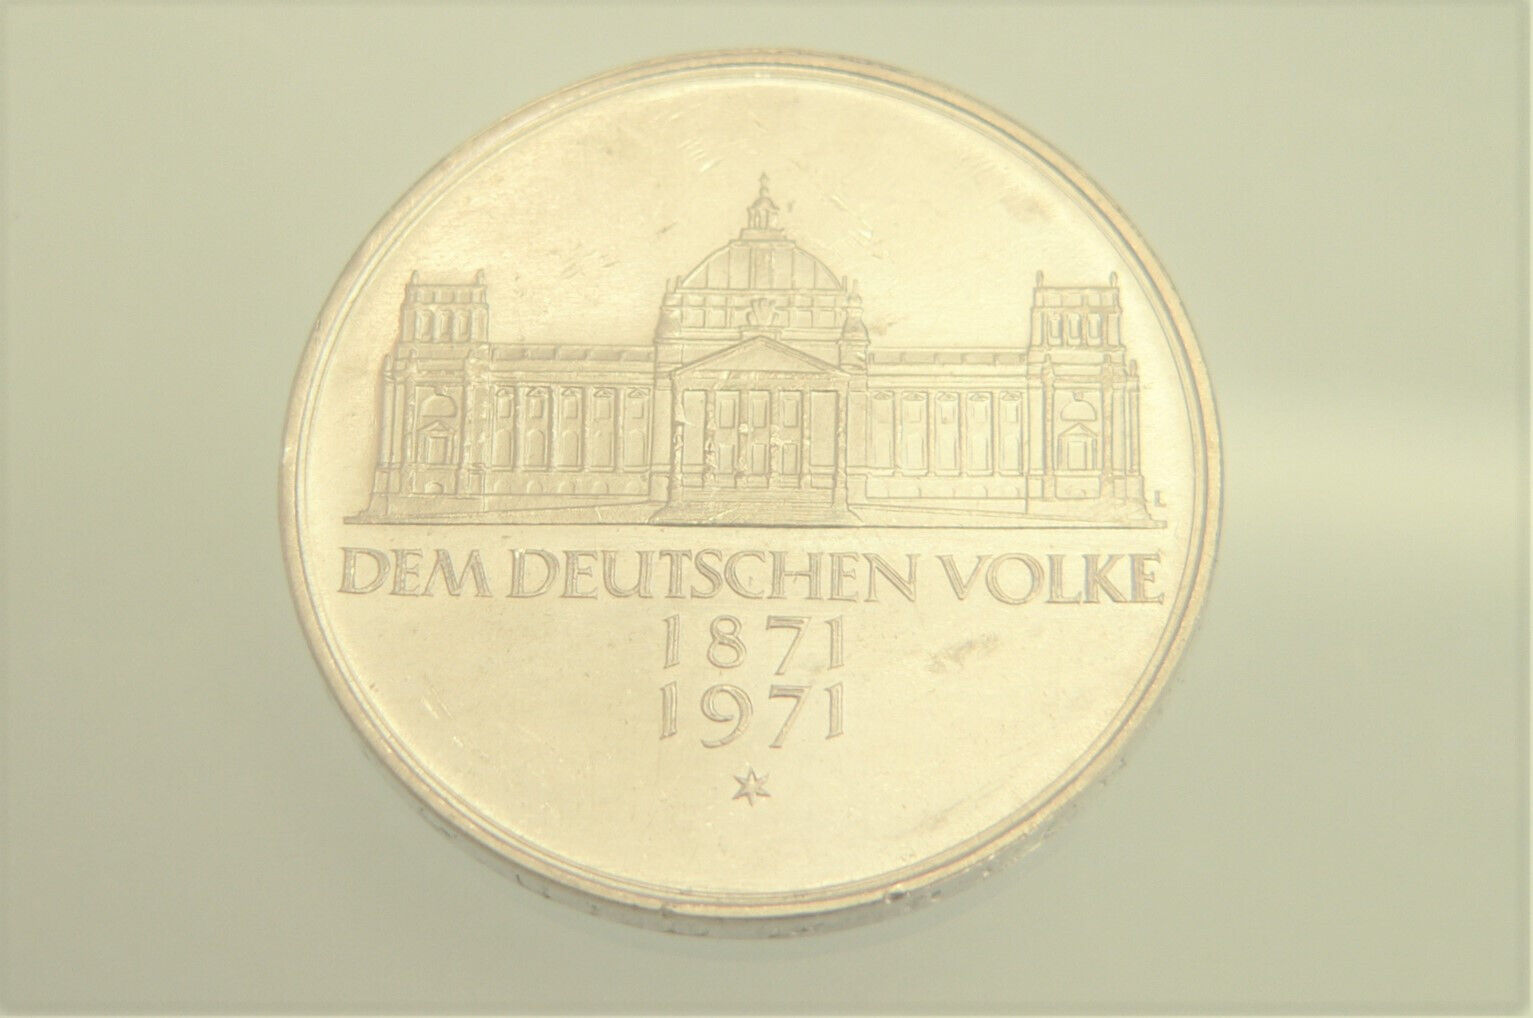 5 DM Deutsche Mark 1871-1971 G Silber Münze ✨Dem deutschen Volke✨ Bundesrepublik